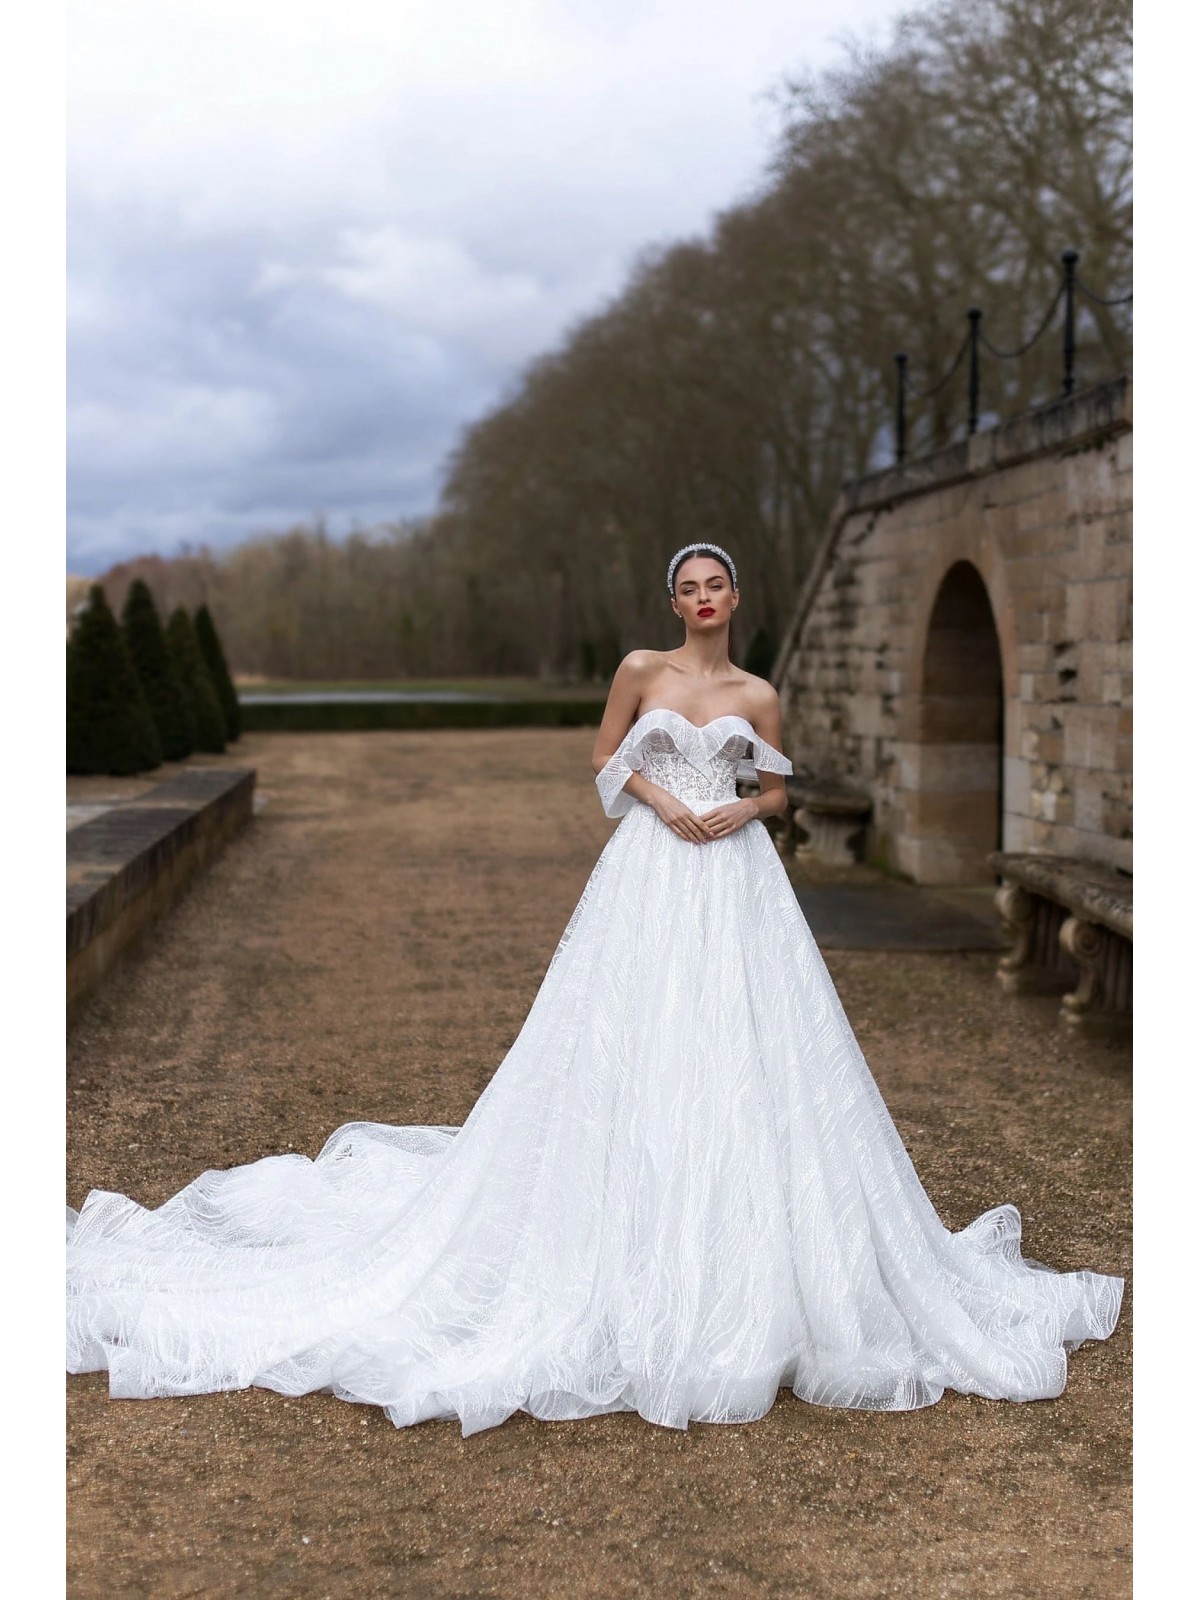 Luxury Wedding Dress - Michelle - LPLD-3194.00.17